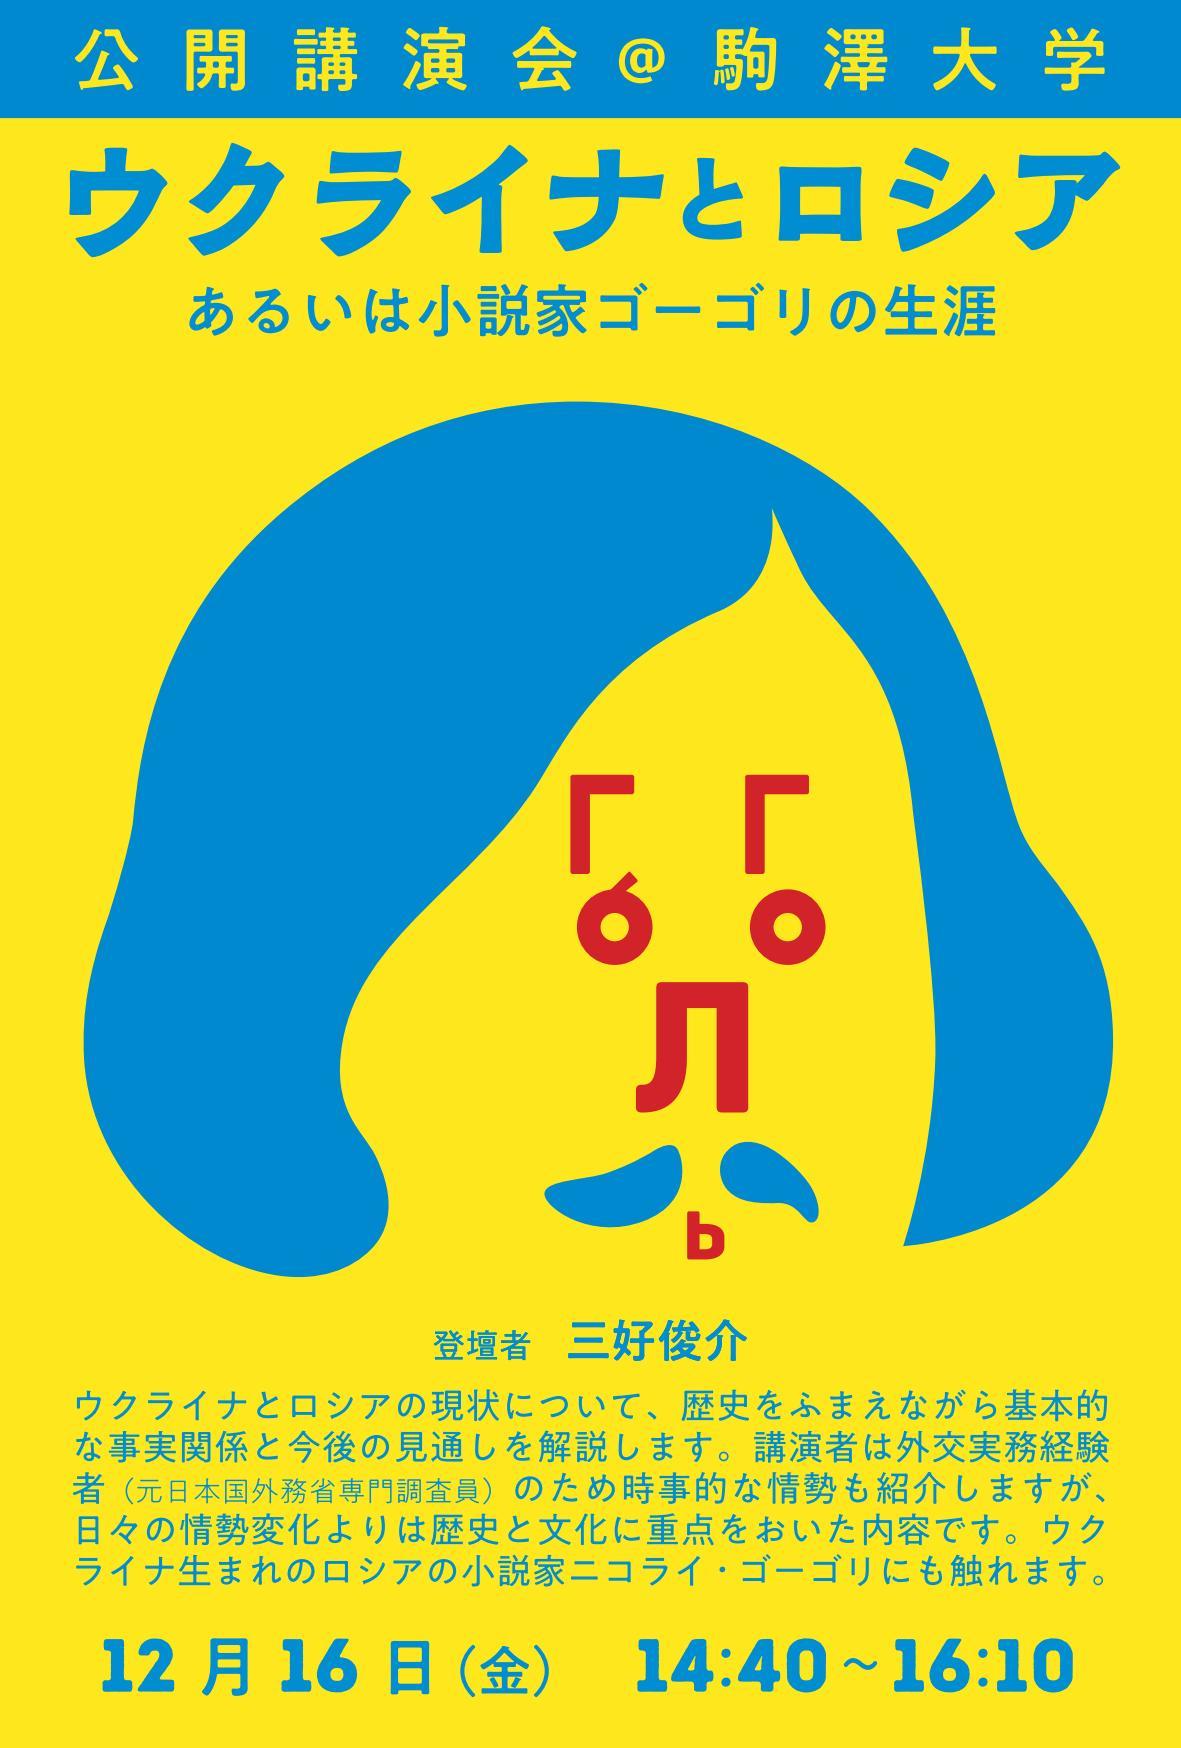 駒澤大学が12月16日に三好俊介准教授による公開講演会「ウクライナとロシア -- あるいは小説家ゴーゴリの生涯 --」を開催